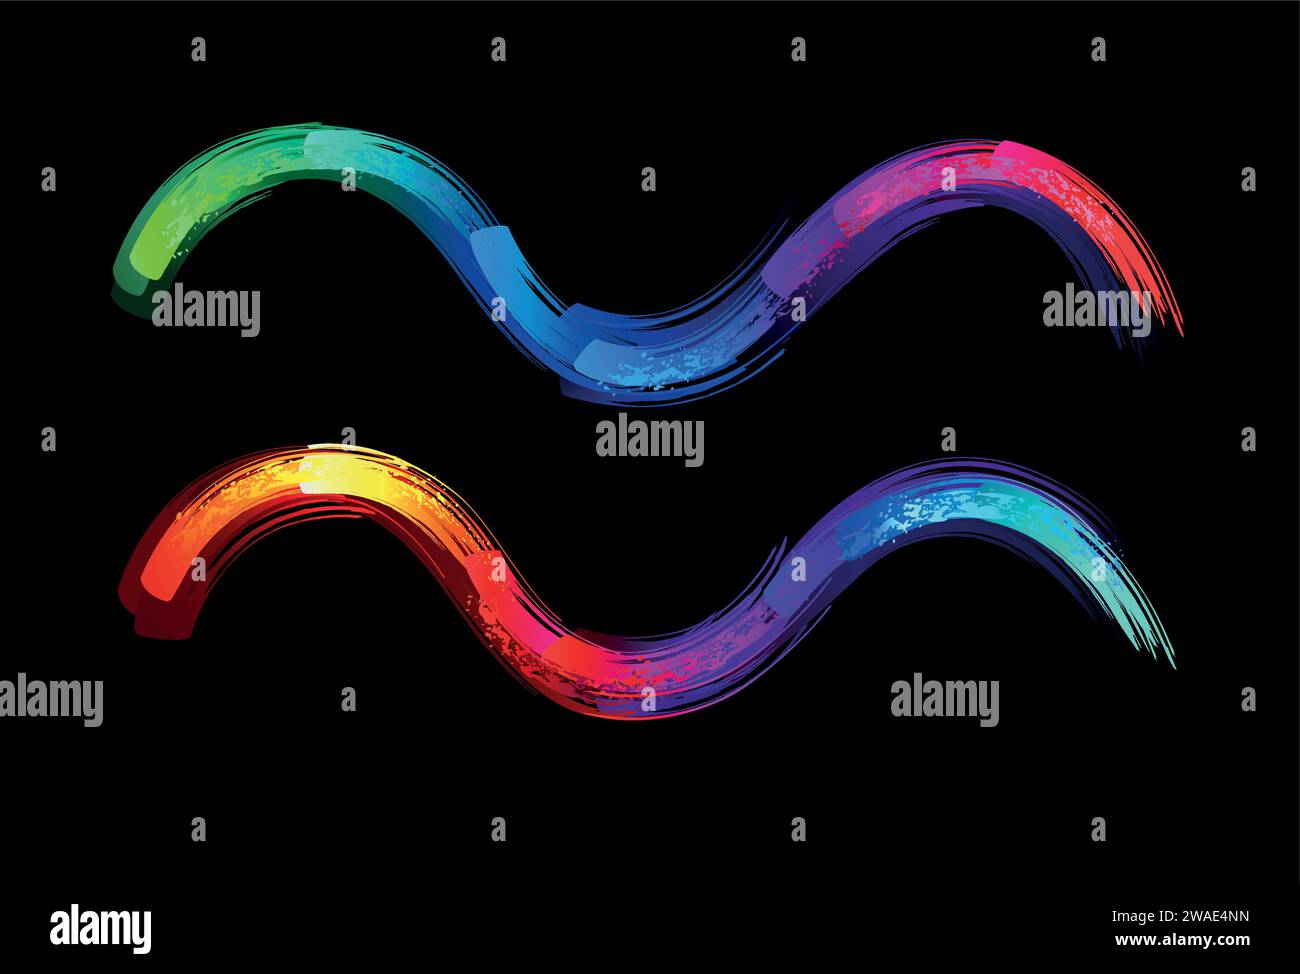 Segno zodiacale dell'Acquario, dipinto con grandi tratti di arcobaleno, luminoso, multicolore, luminescente, vernice al neon su sfondo nero. Simbolo Zodiaco. Illustrazione Vettoriale